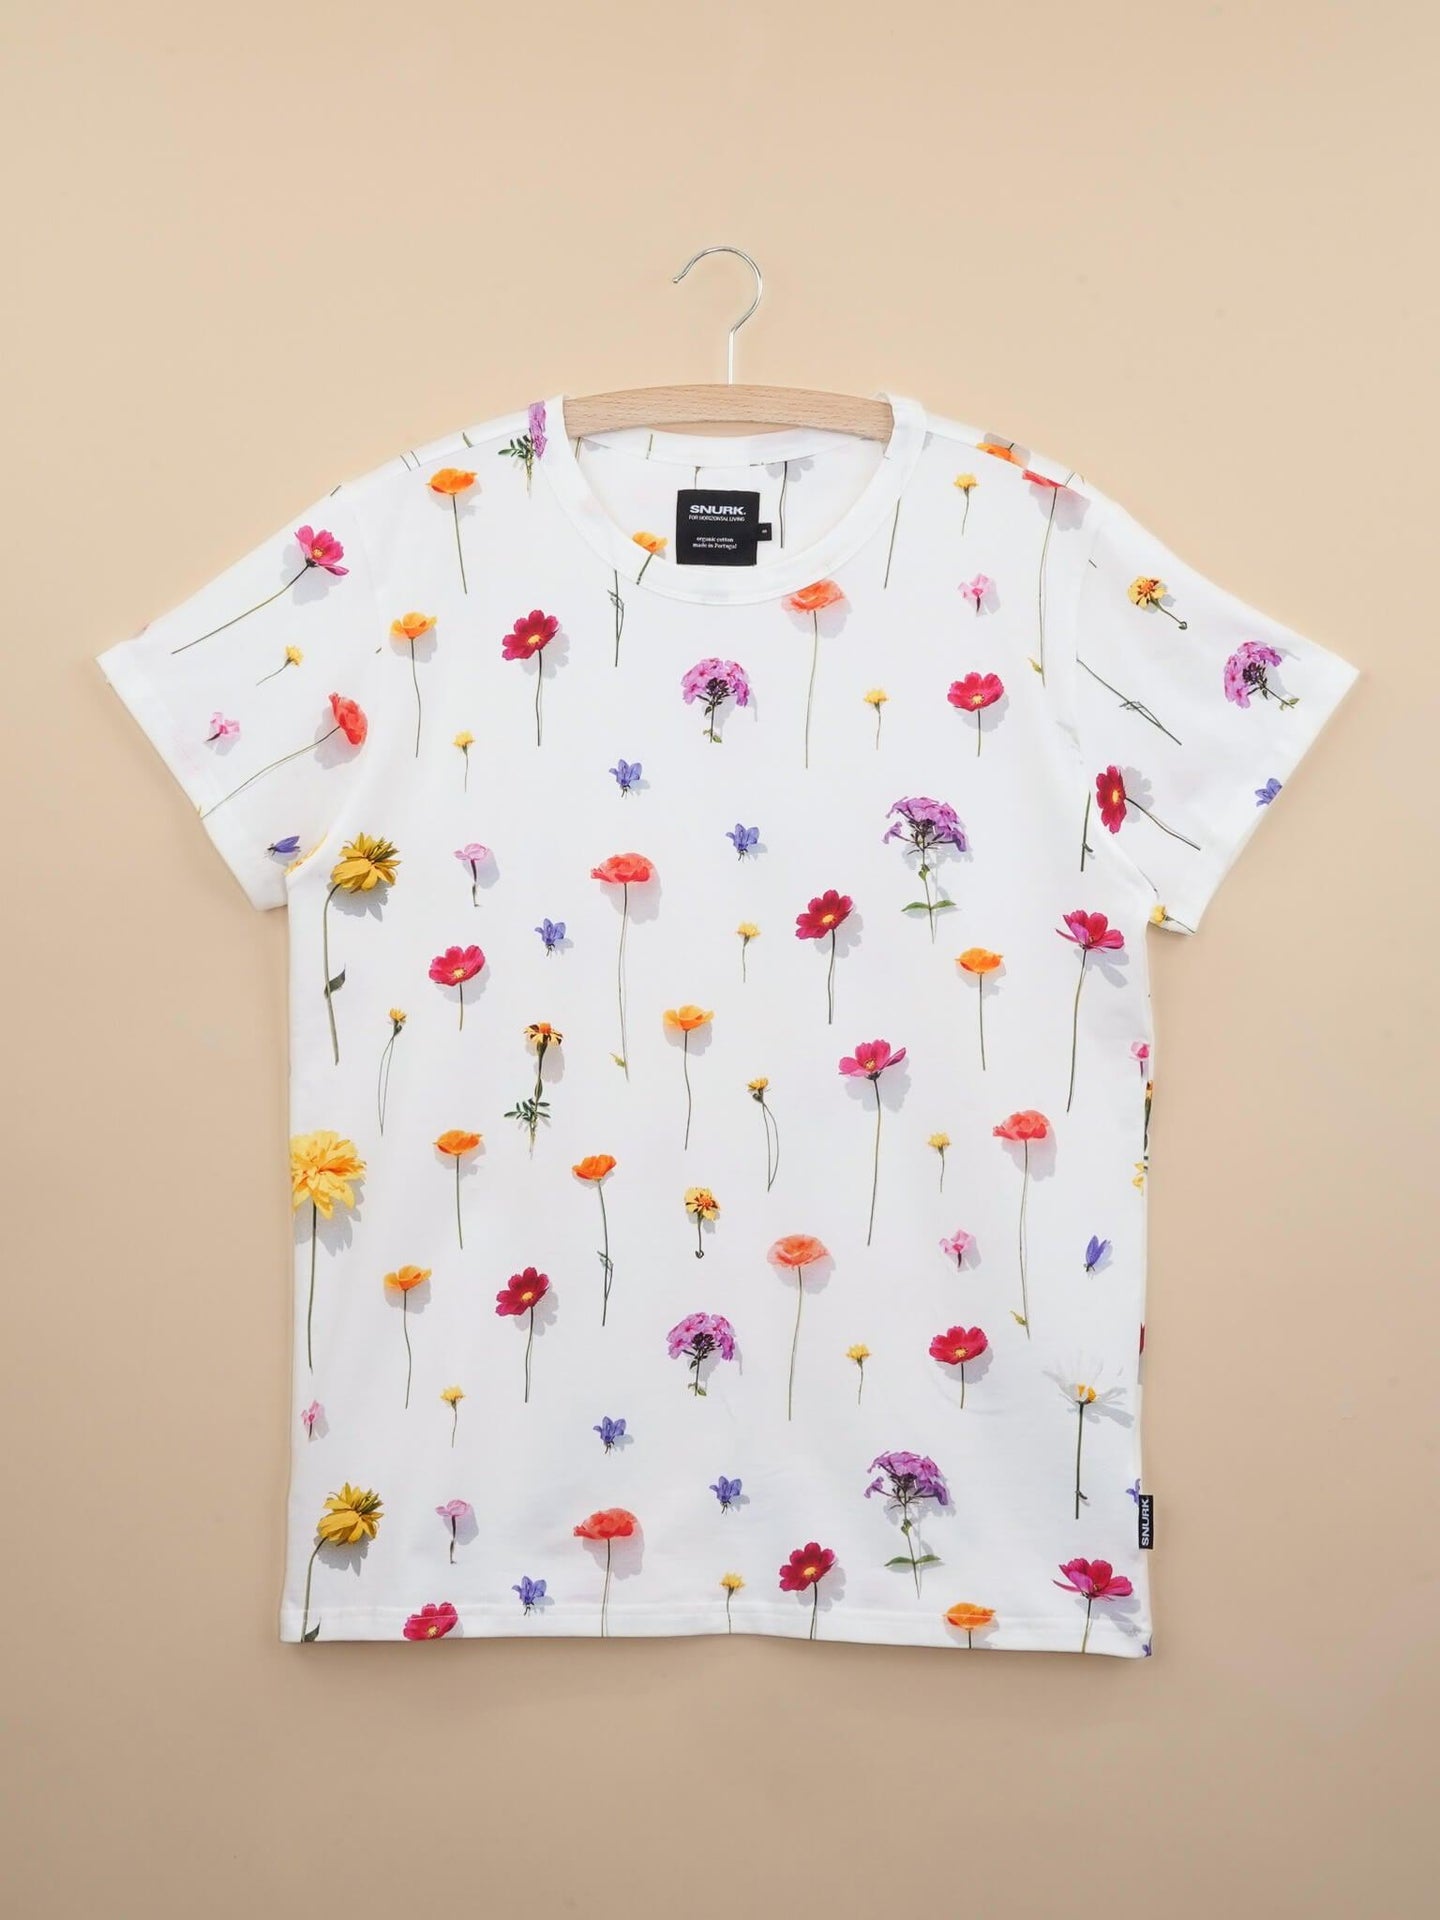 Bloom T-shirt Unisex - SNURK